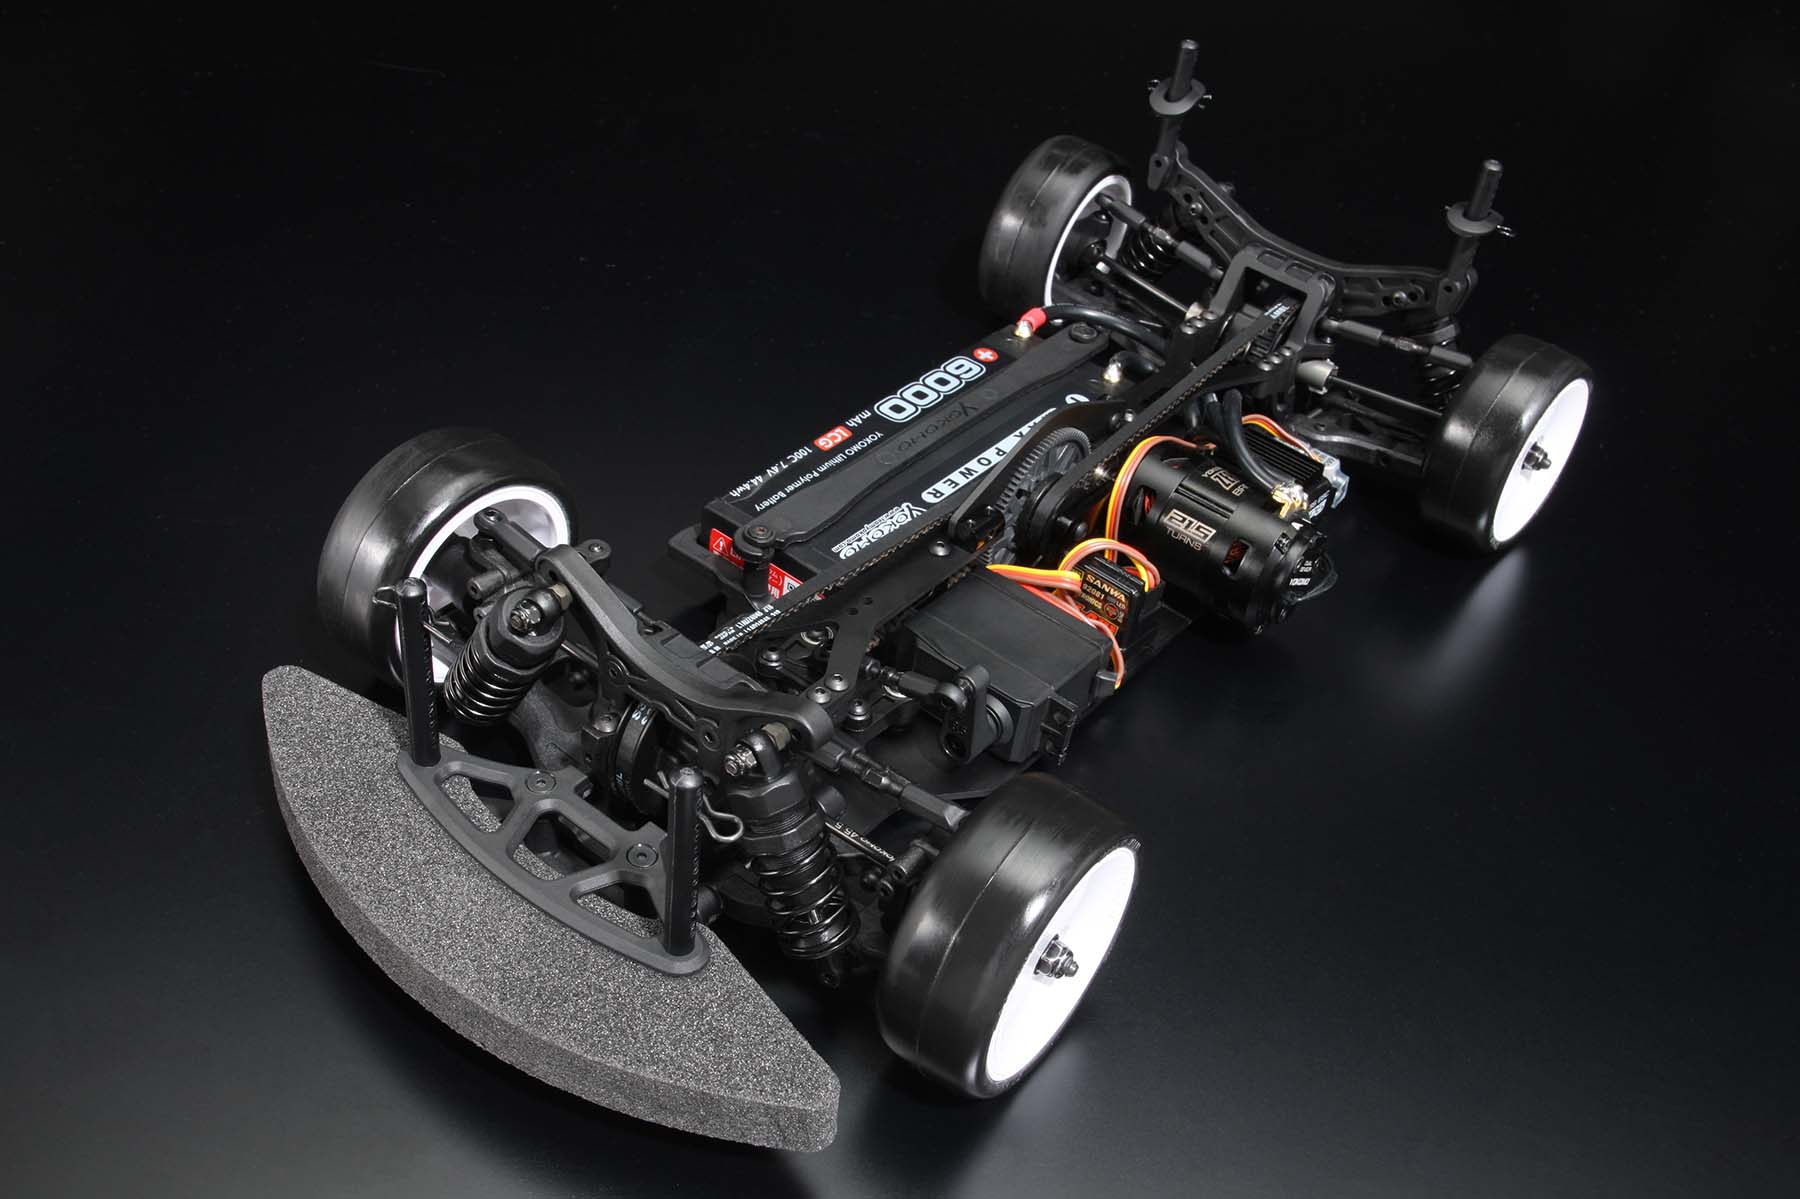 ヨコモ 【再生産】1/10 電動RCカー組立キット ルーキースピード RS1.0 シャーシキット【RSR-010】 ラジコン